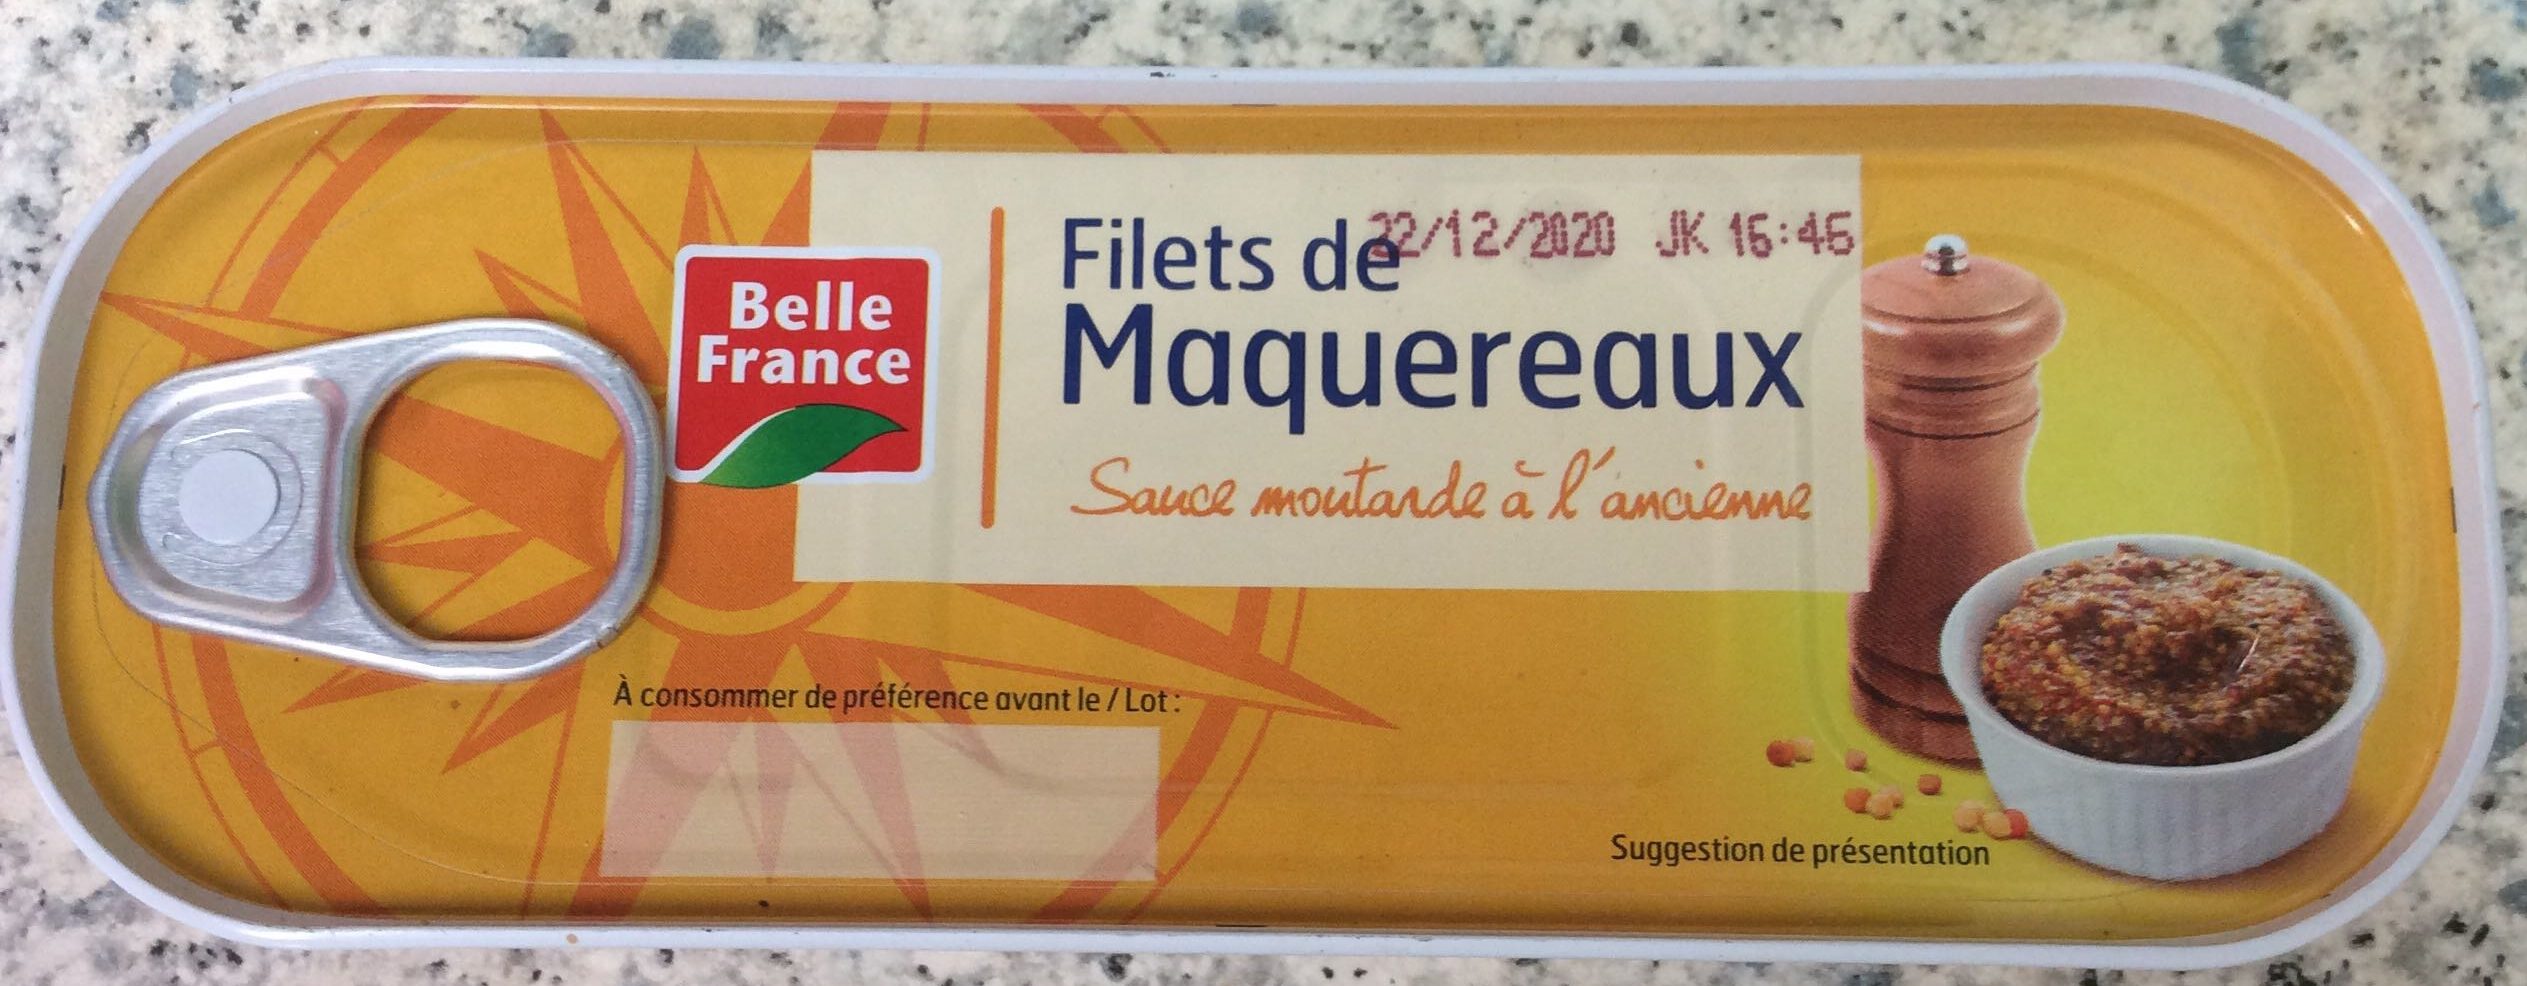 Filets de Maquereaux à la Moutarde - Product - fr